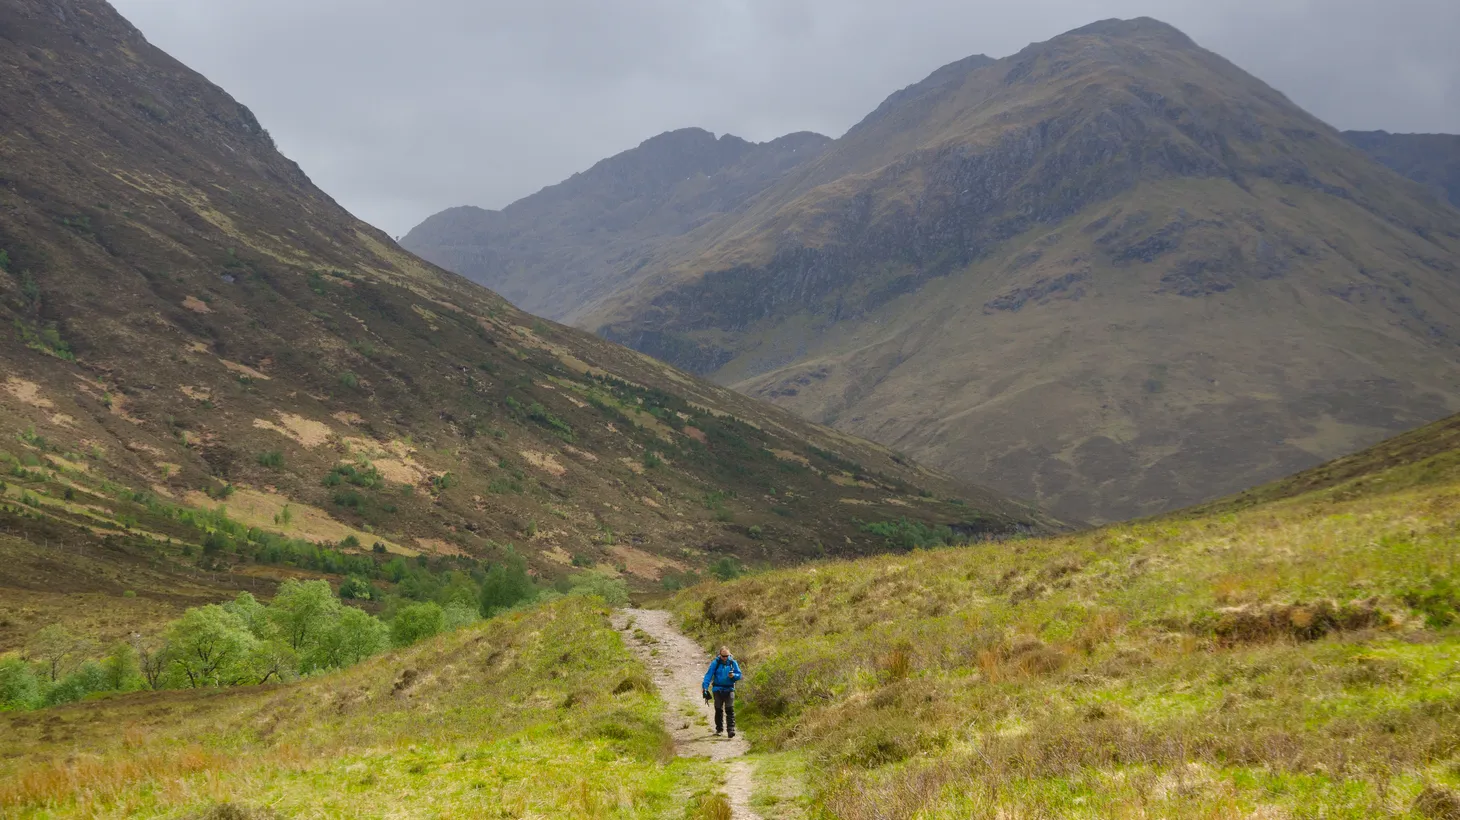 The Cape Wrath Trail in Scotland.